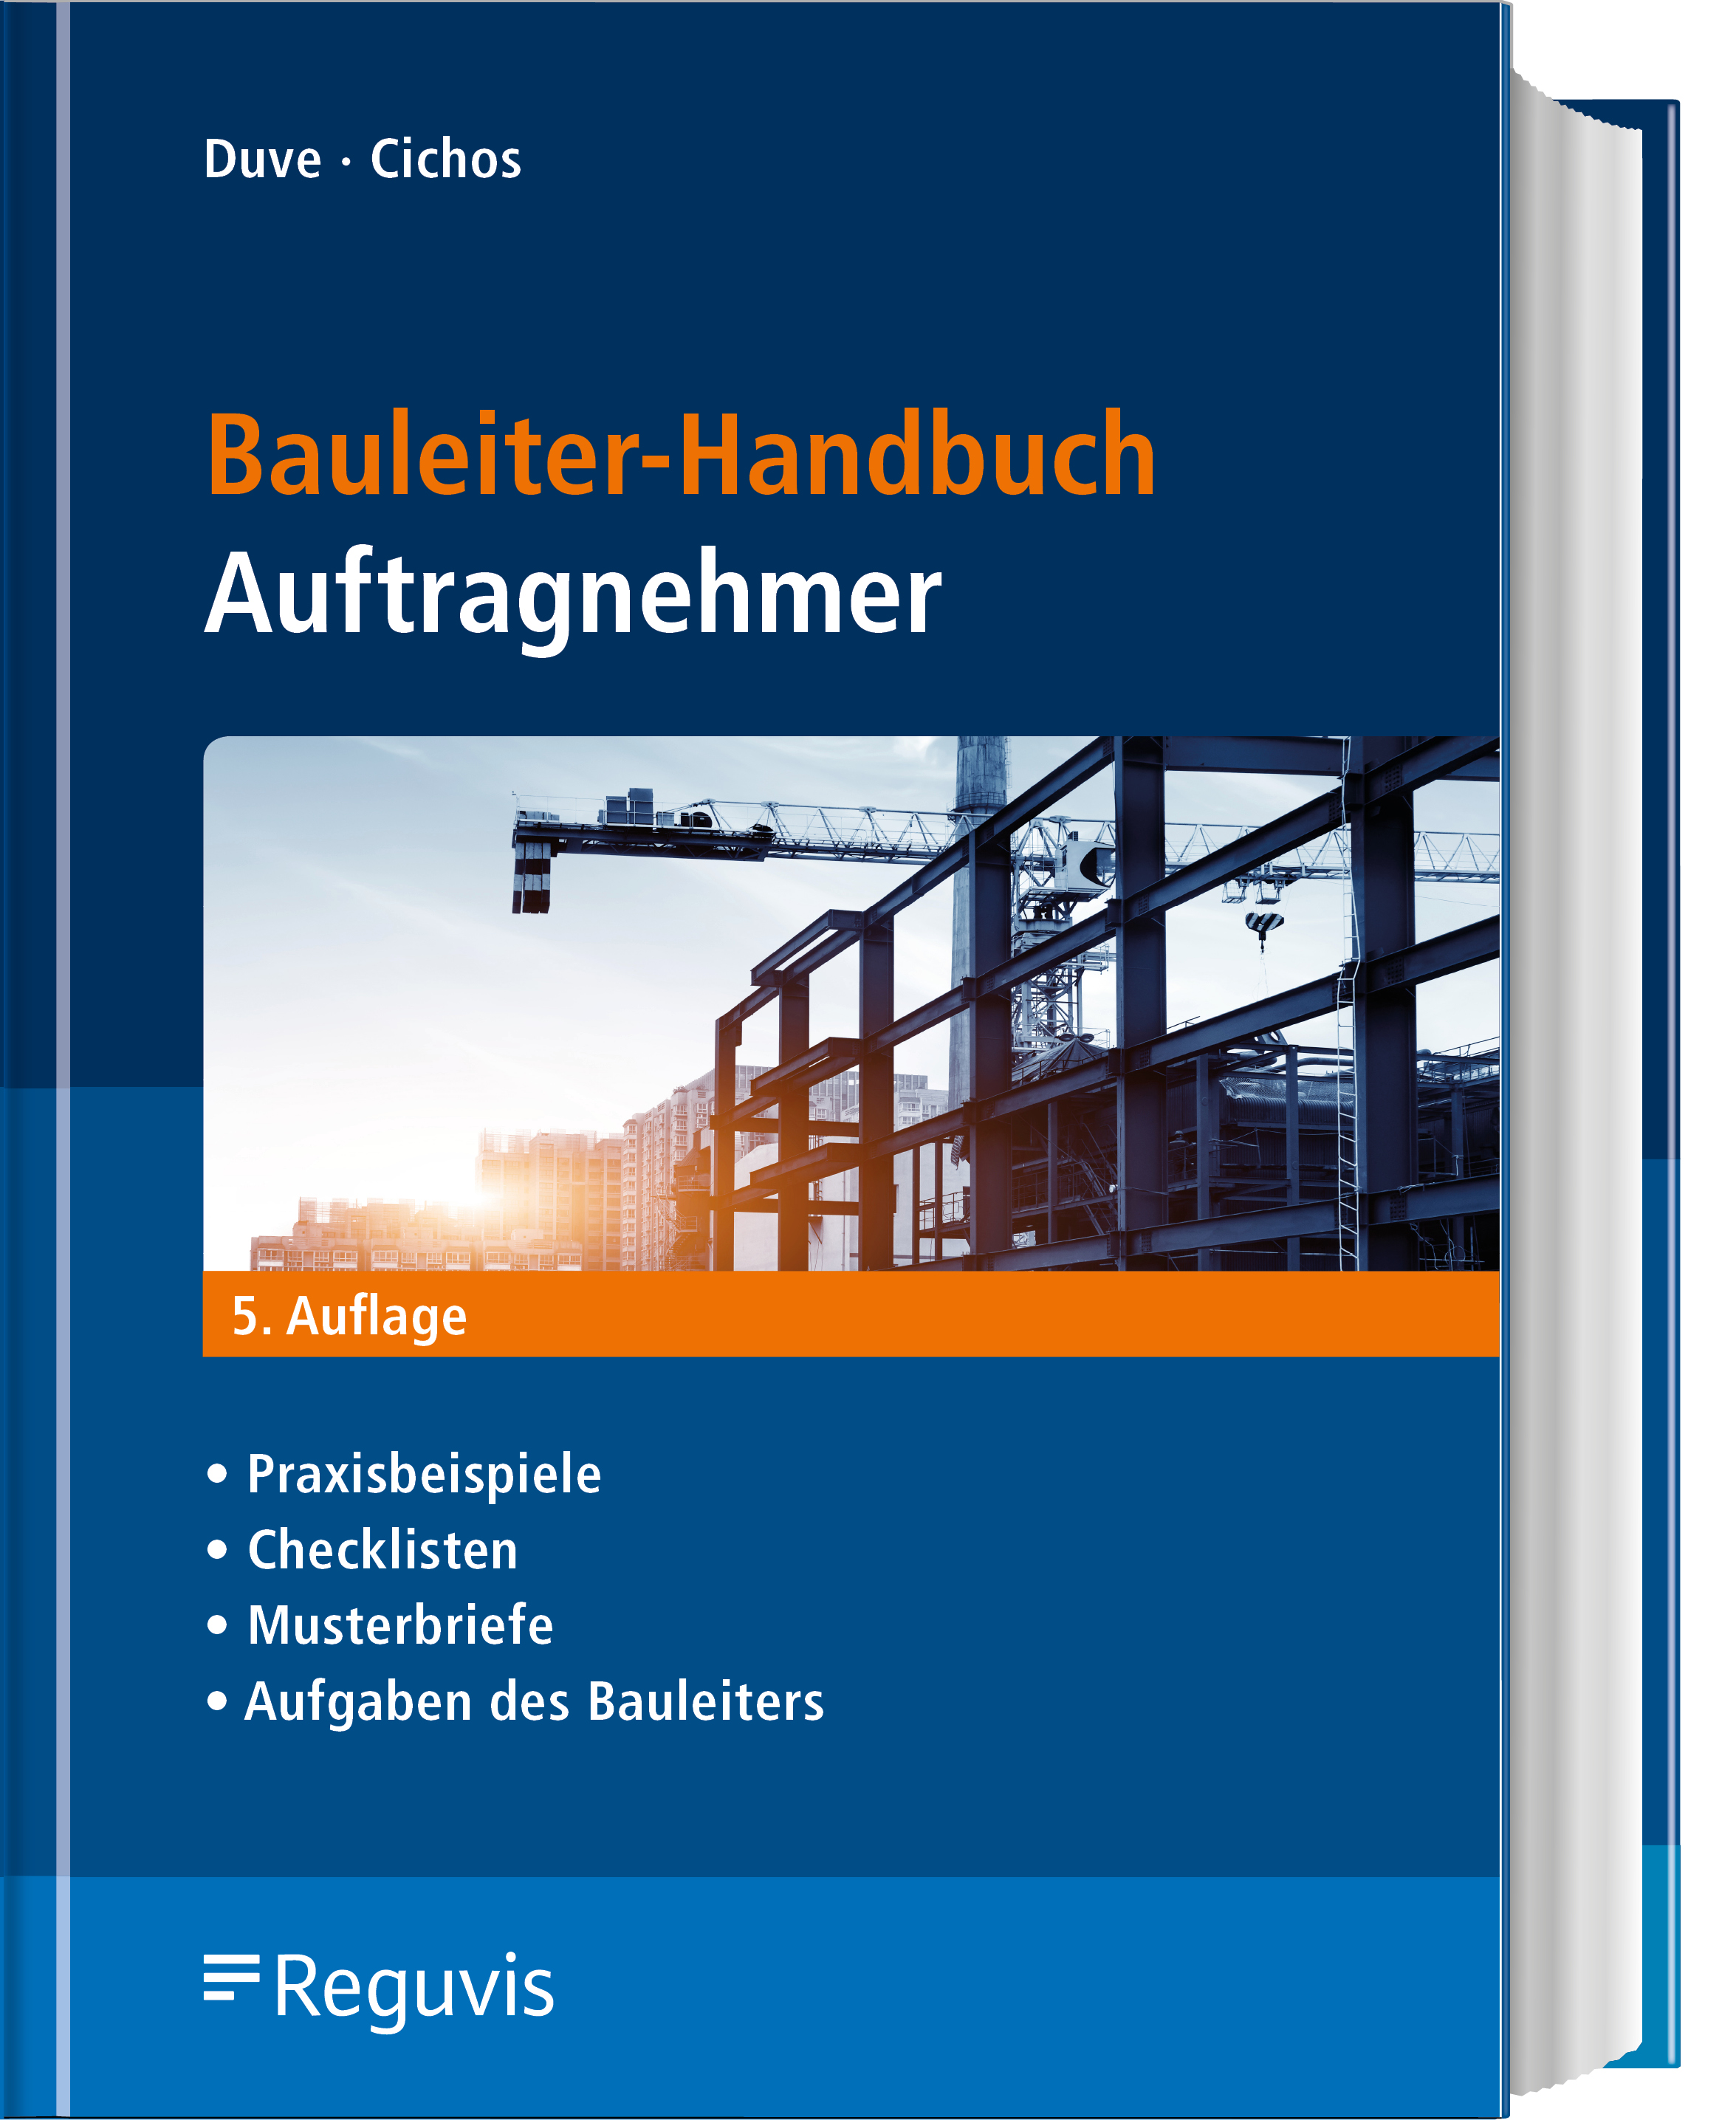 Bauleiter-Handbuch Auftragnehmer